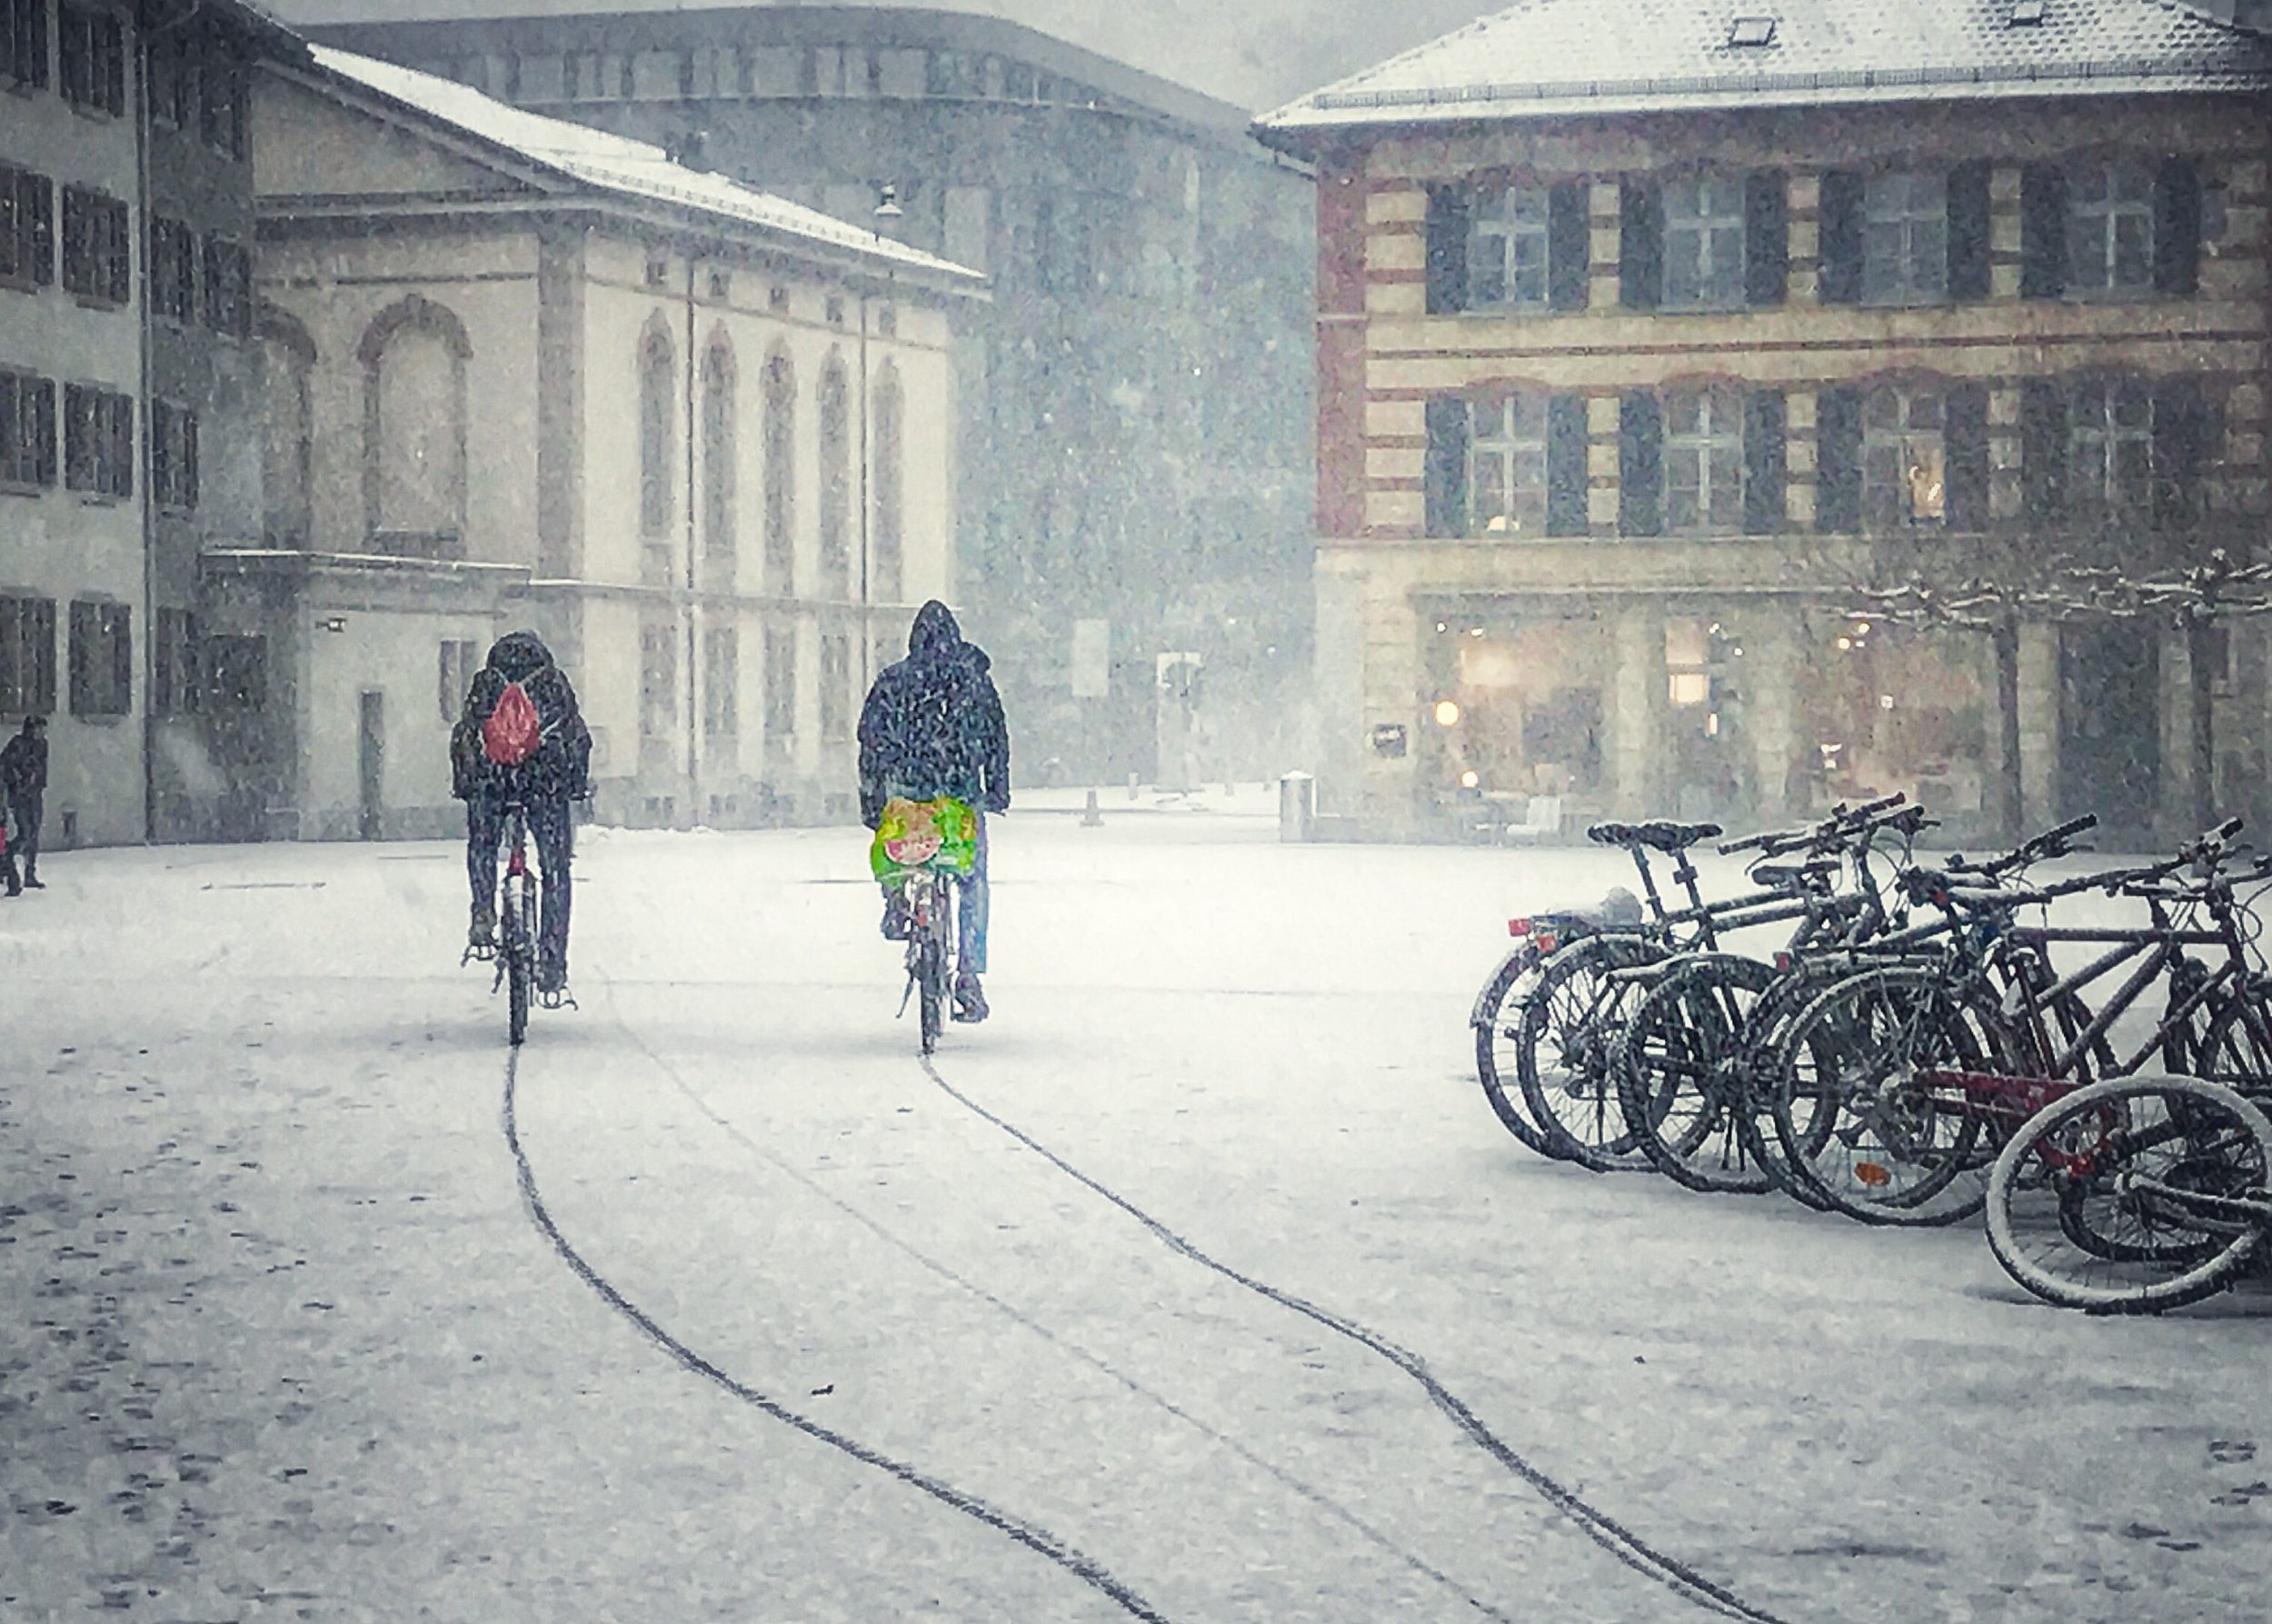 vélo d'hiver, vélo, cyclisme, hiver, mobilité, transport, mobilité durable, hiver à vélo,